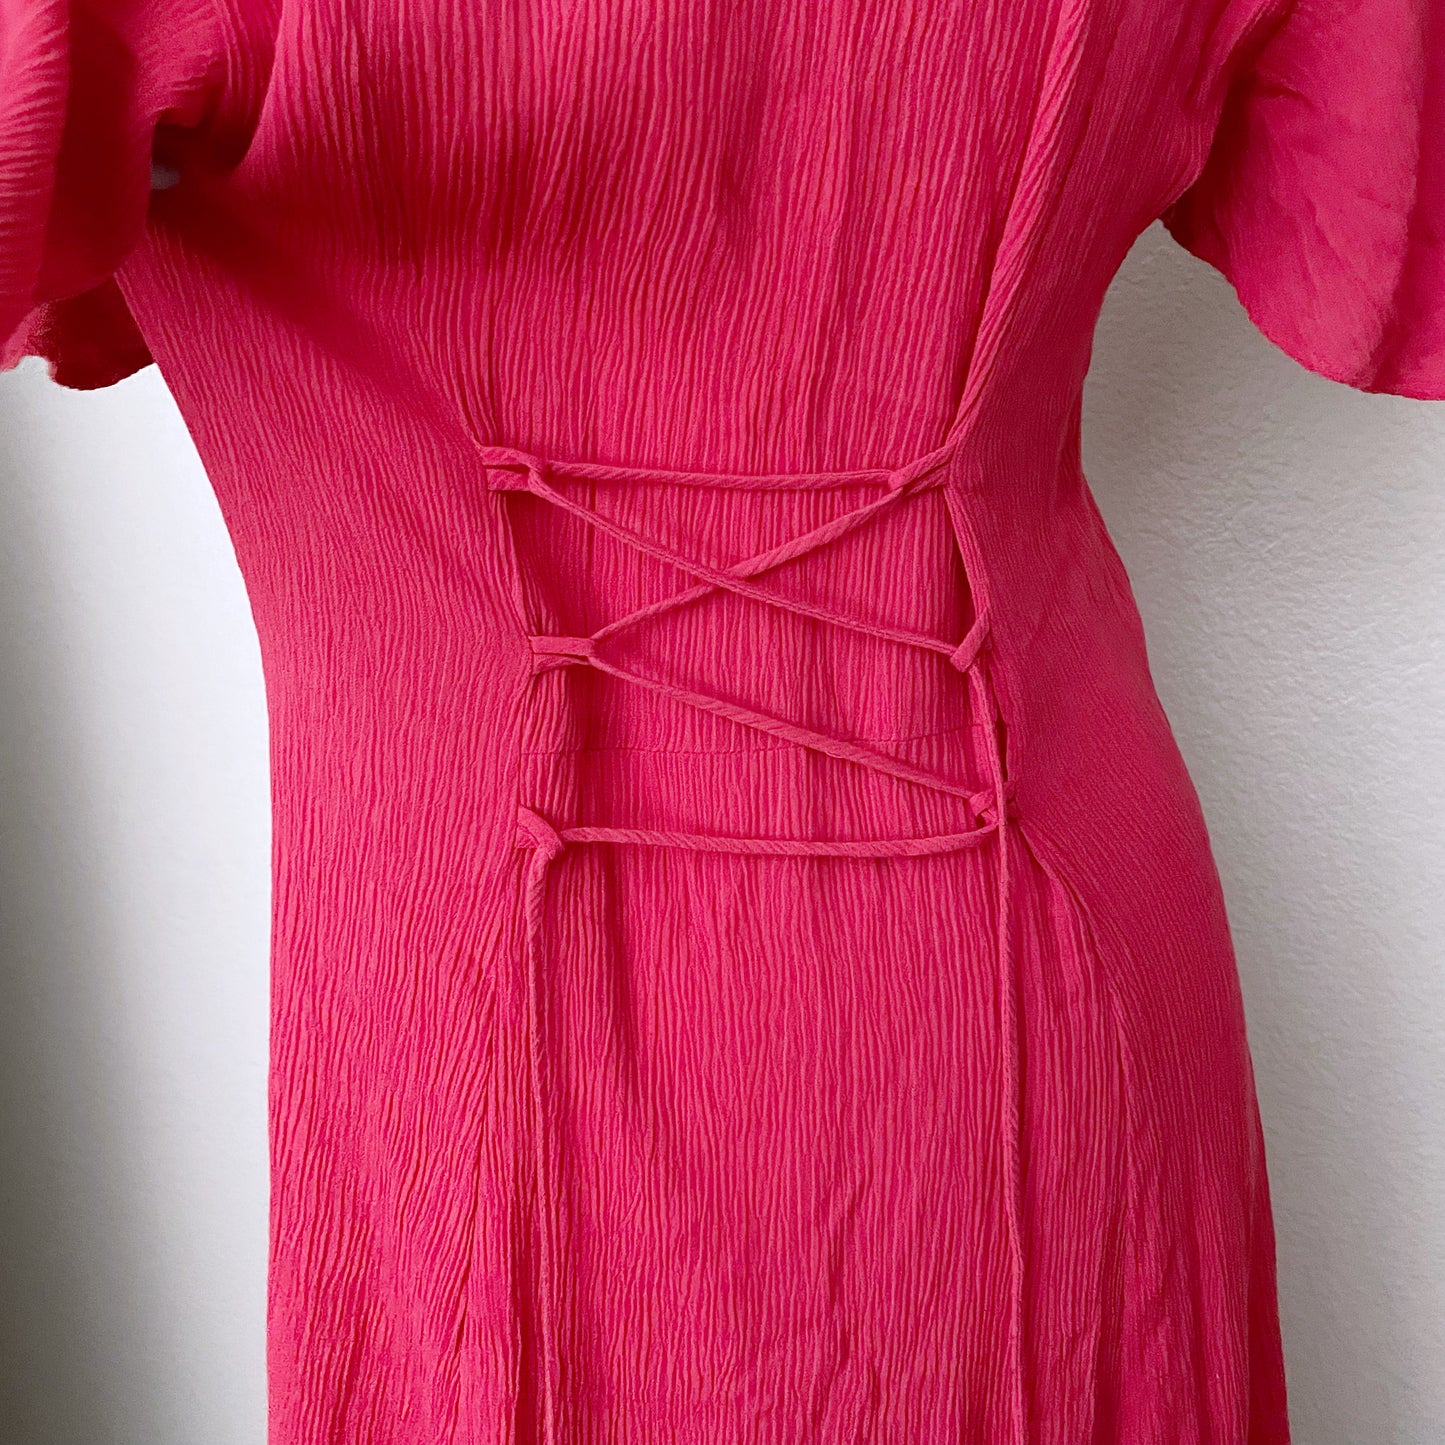 Gauzy Vintage Hot Pink Maxi Dress (8)